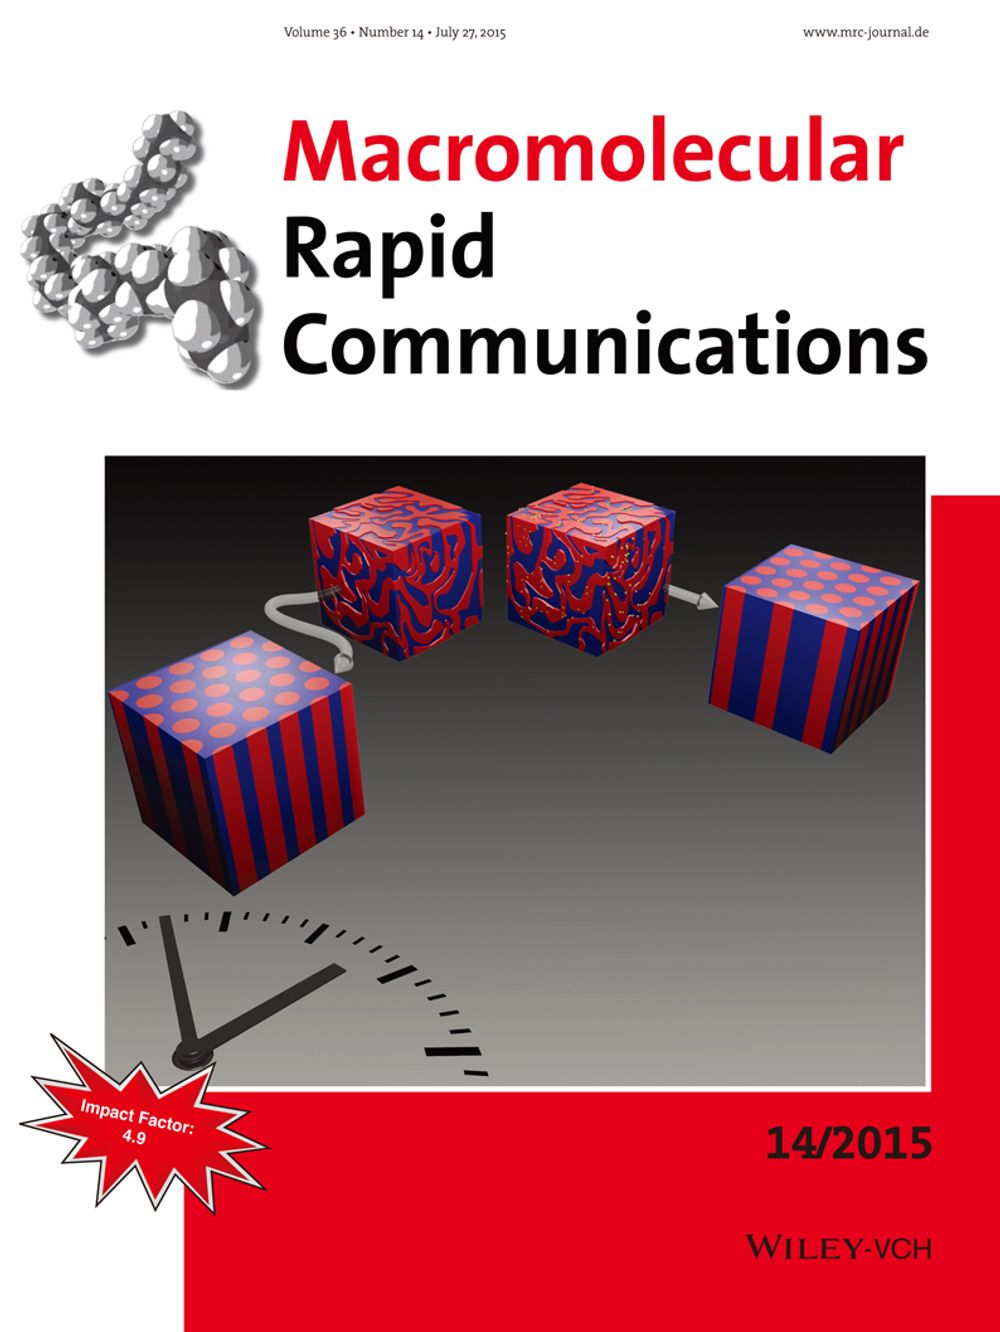 材料系林唯芳教授快速增益含導電高分子之嵌段共聚物自組裝成奈米有序結構研究榮登 《Macromolecular Rapid Communications》期刊封面。